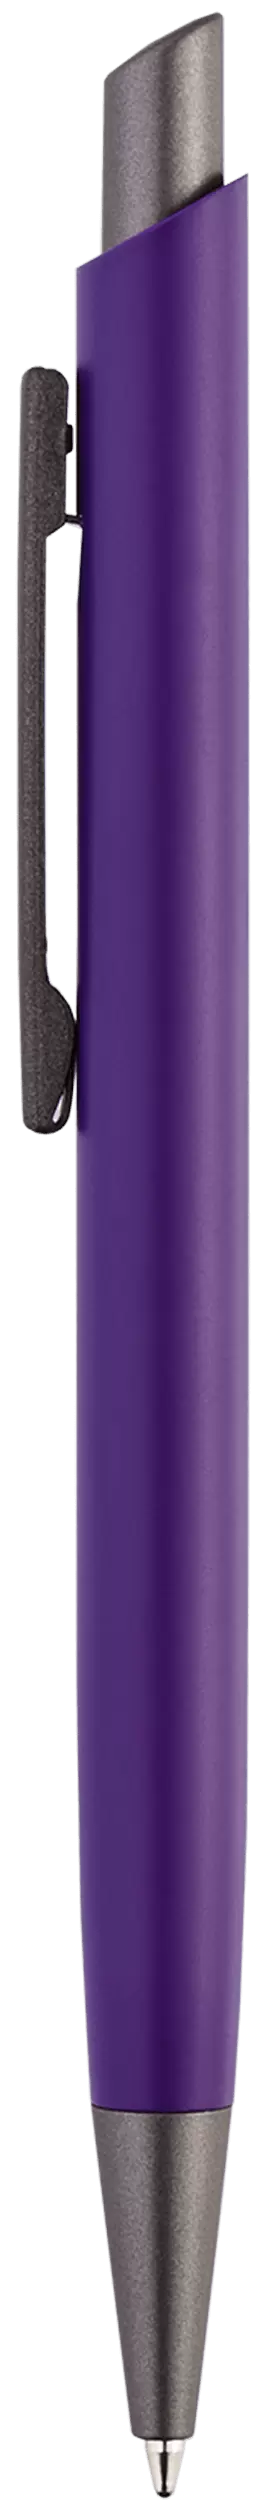 Ручка ELFARO TITAN Фиолетовая 3052-11